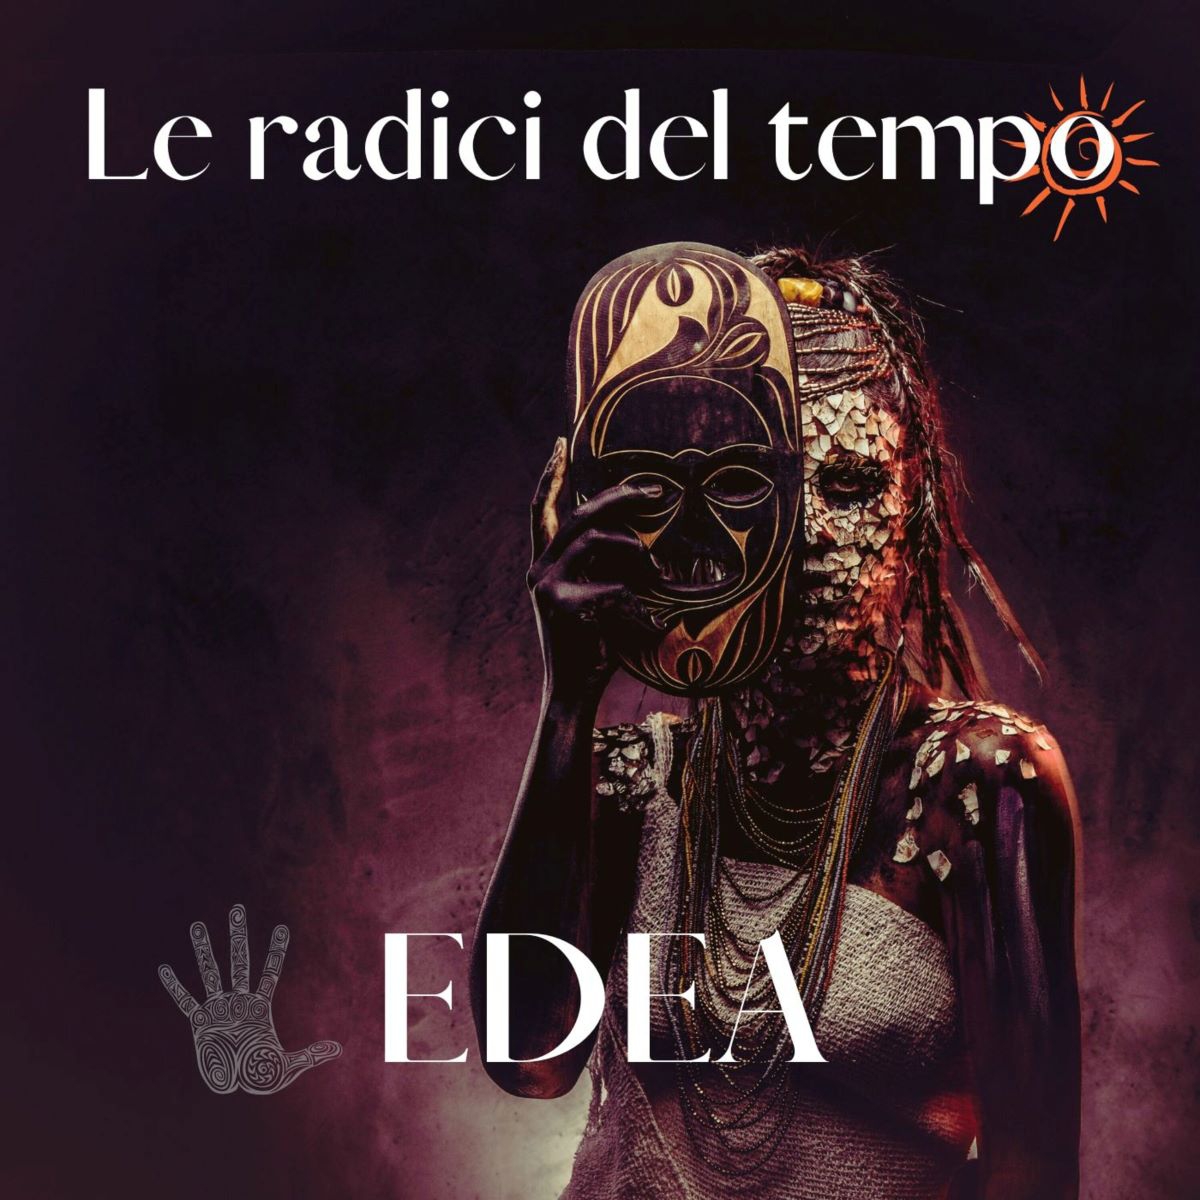 Edea - Il nuovo singolo “Le radici del tempo”